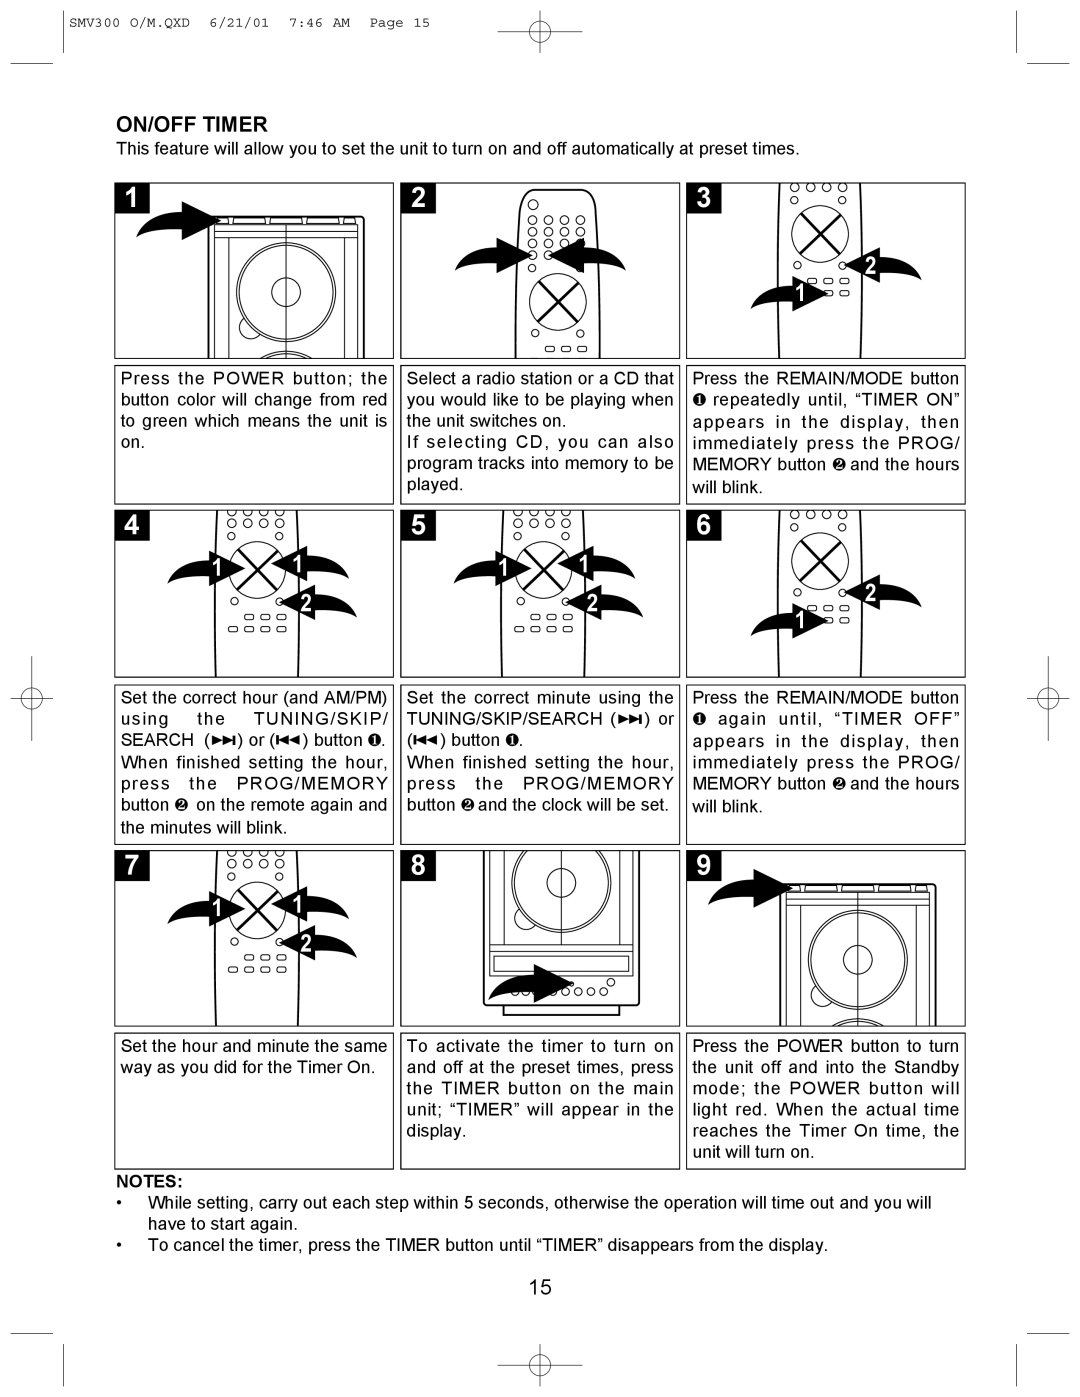 Scotts SMV300 instruction manual On/Off Timer 